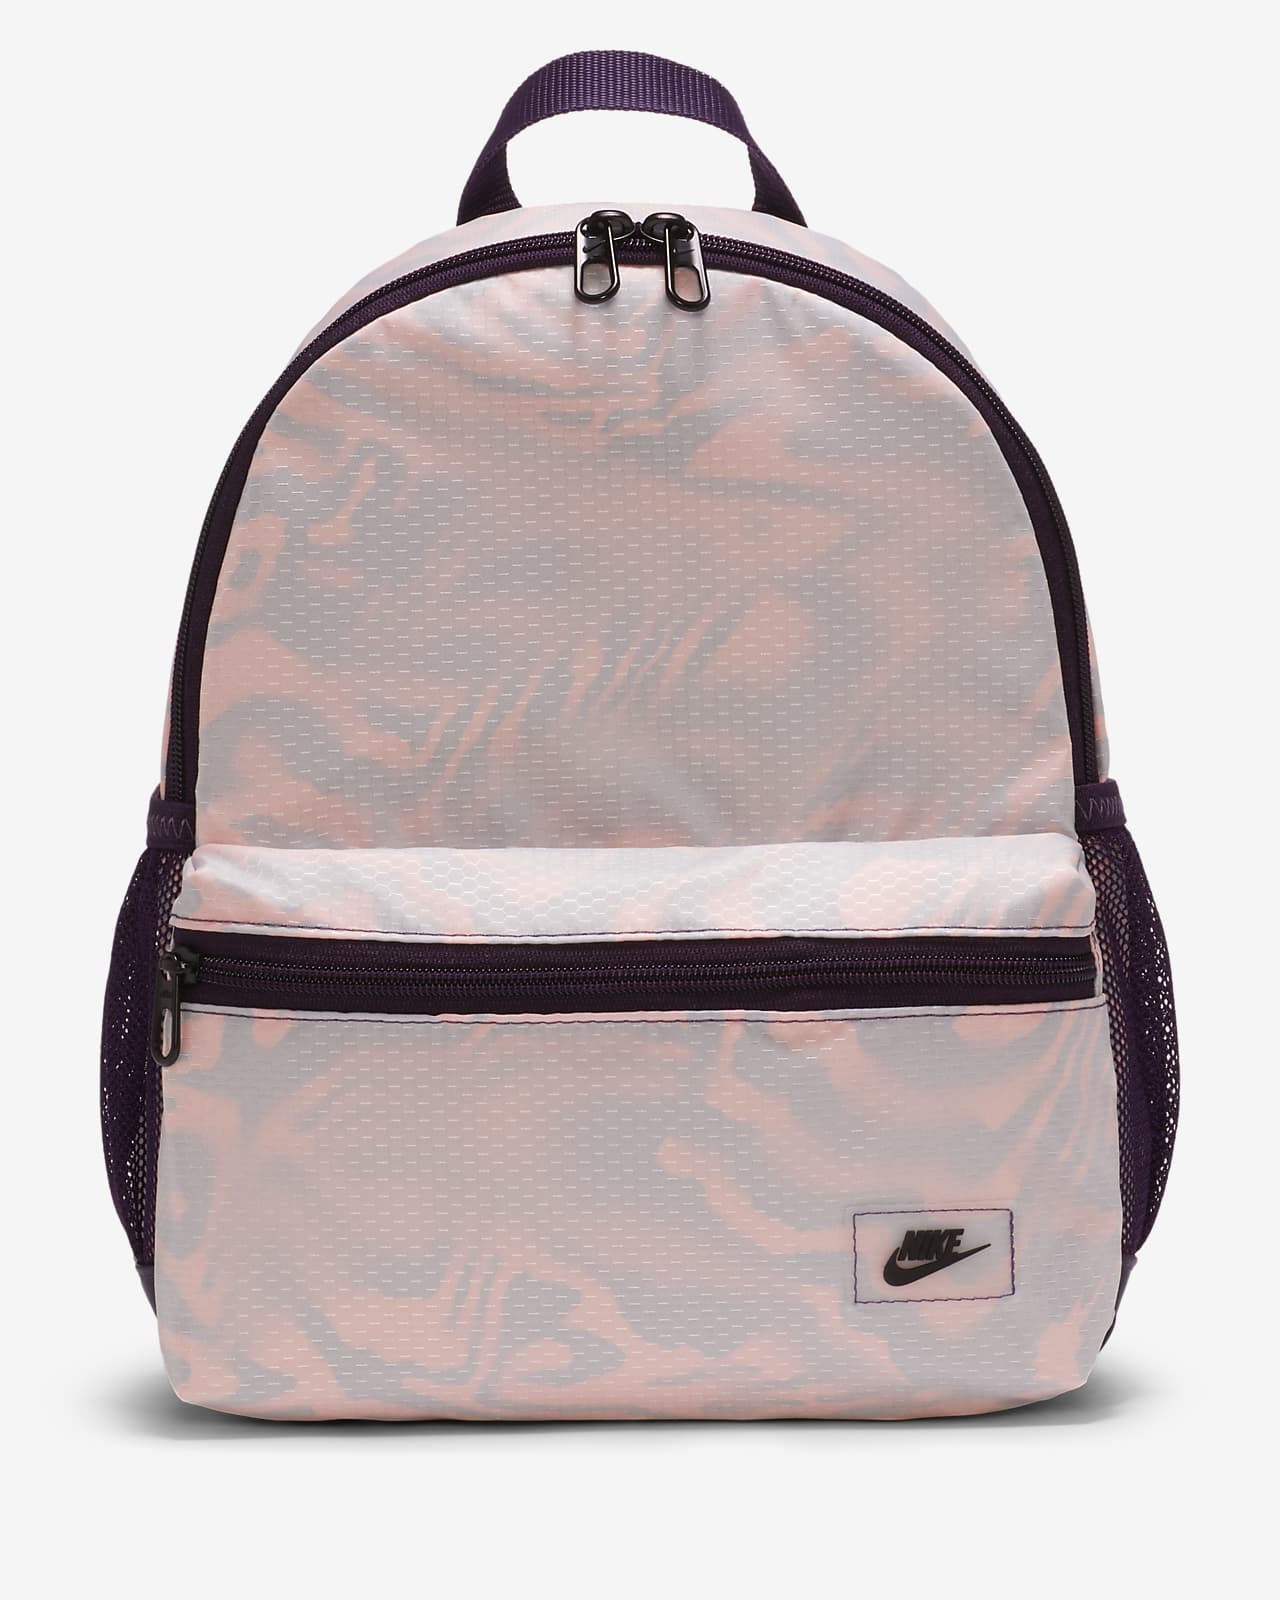 nike mesh backpack purple